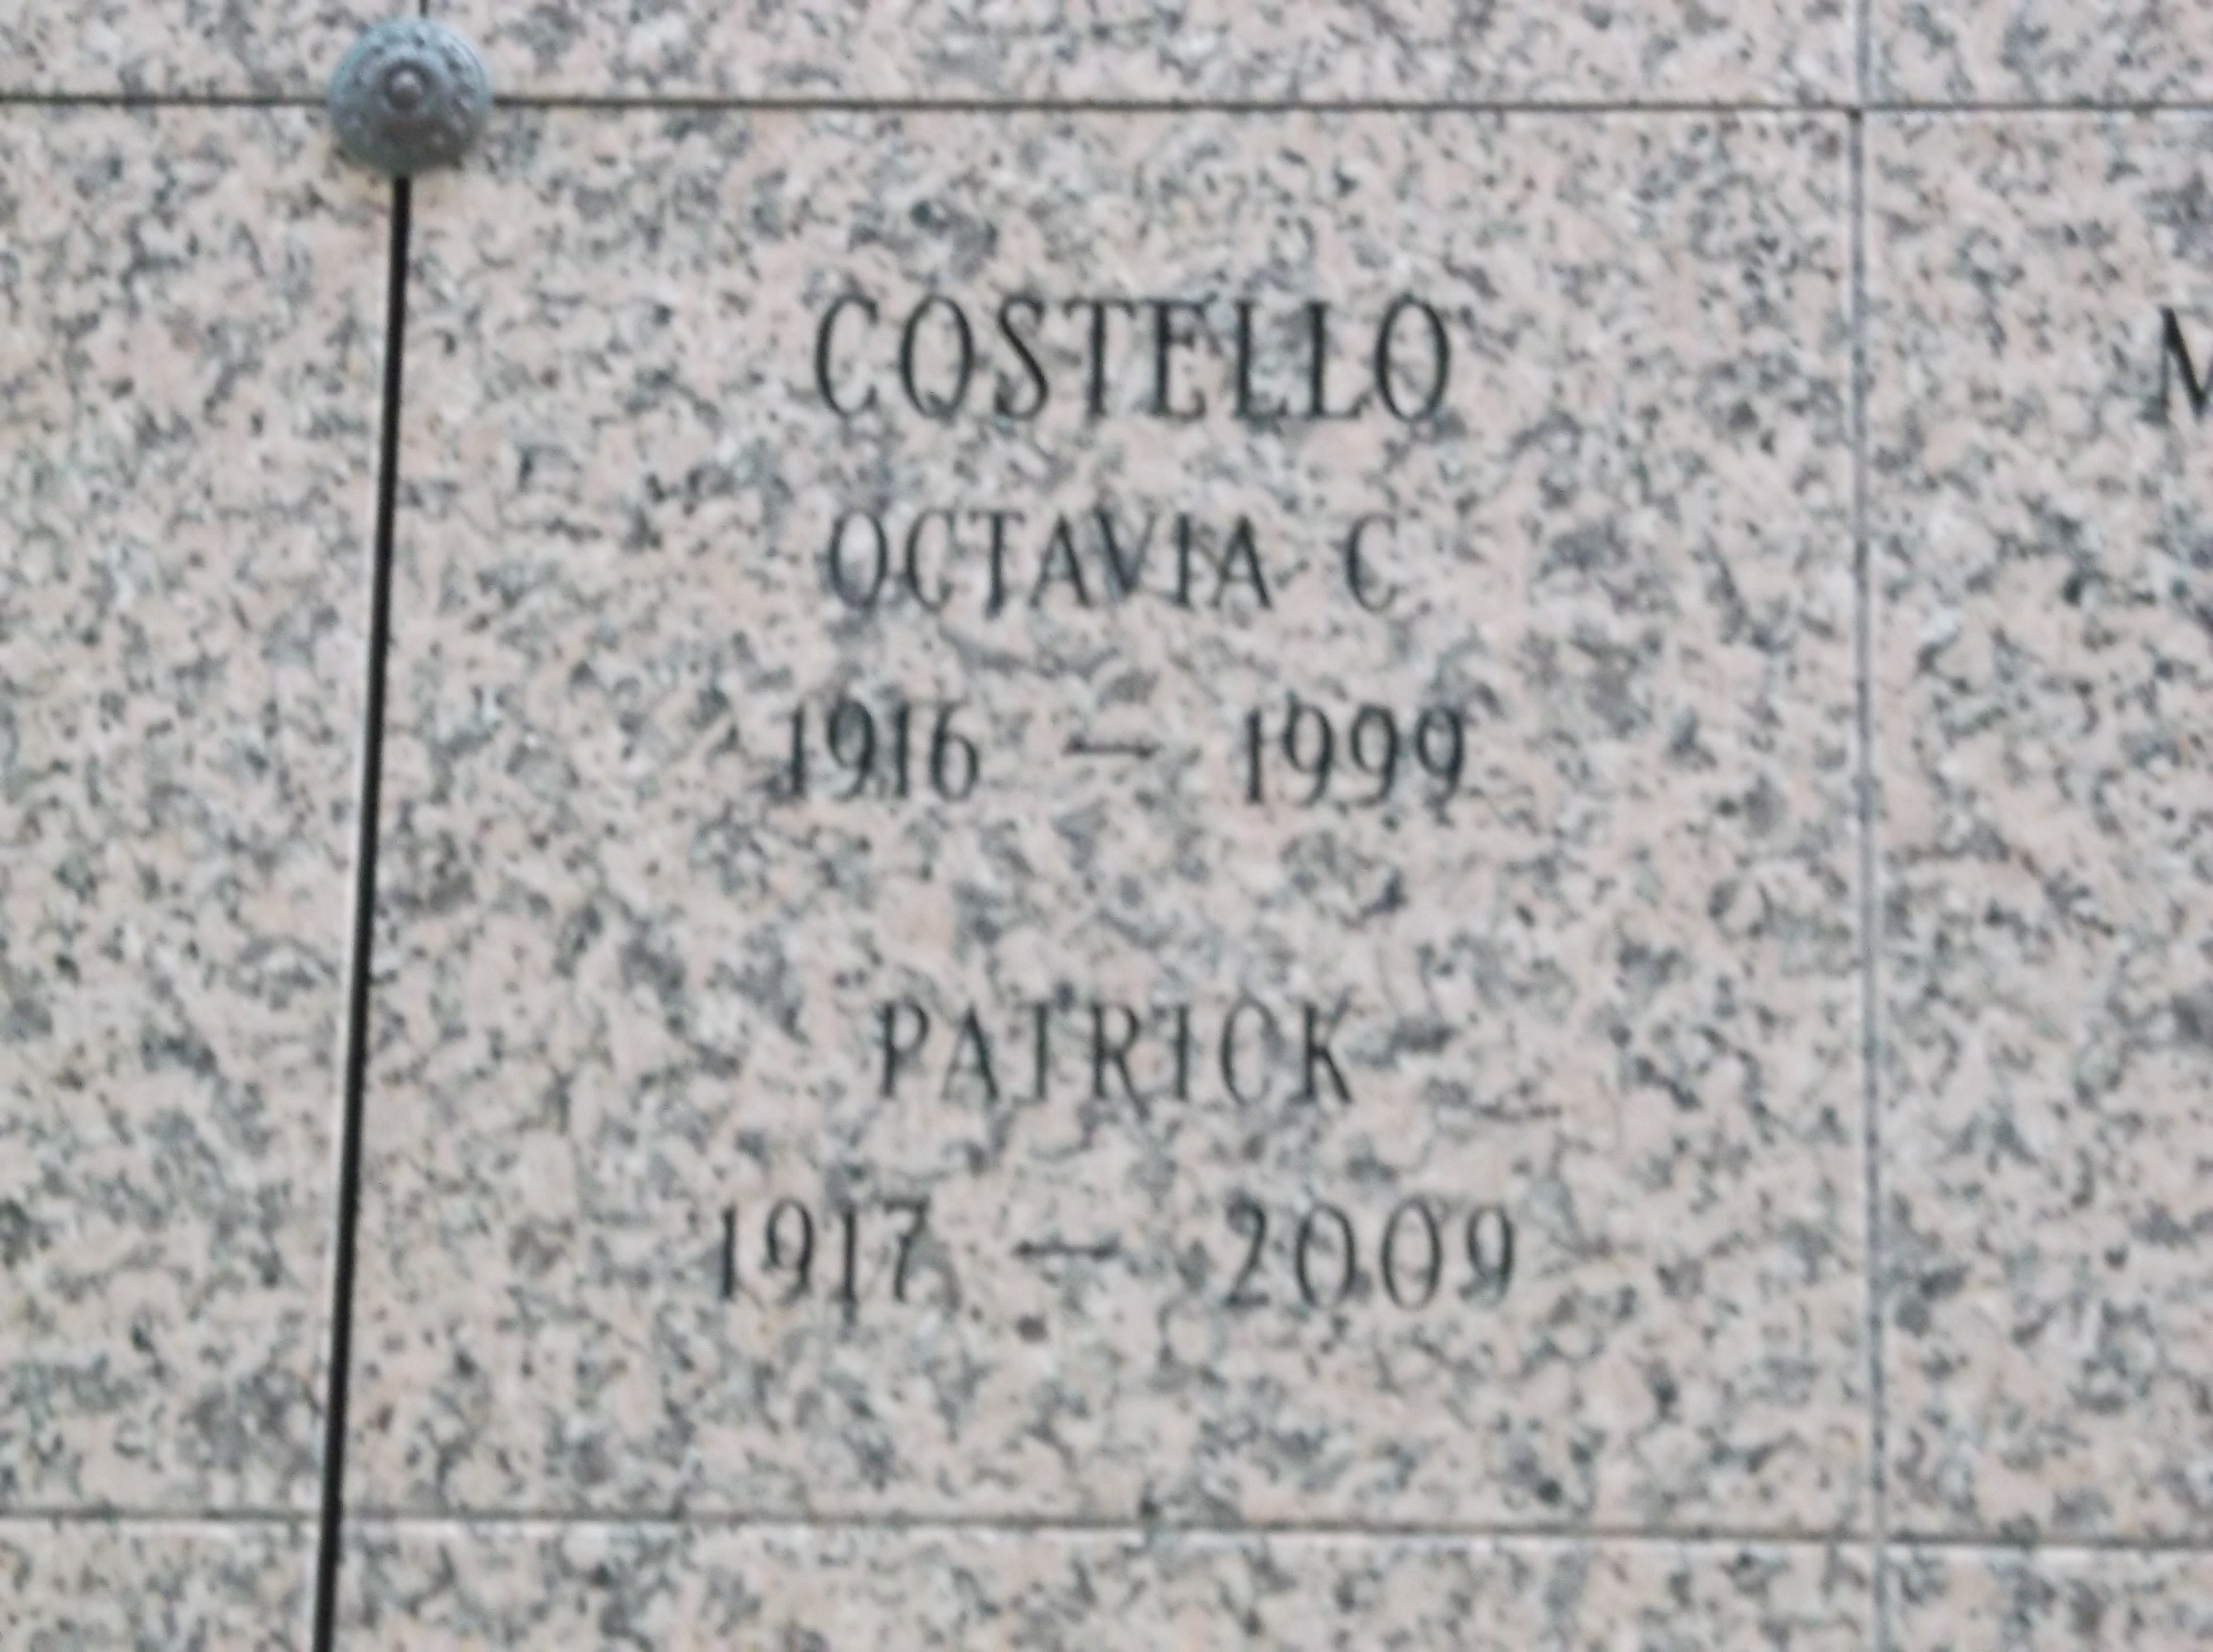 Octavia C Costello